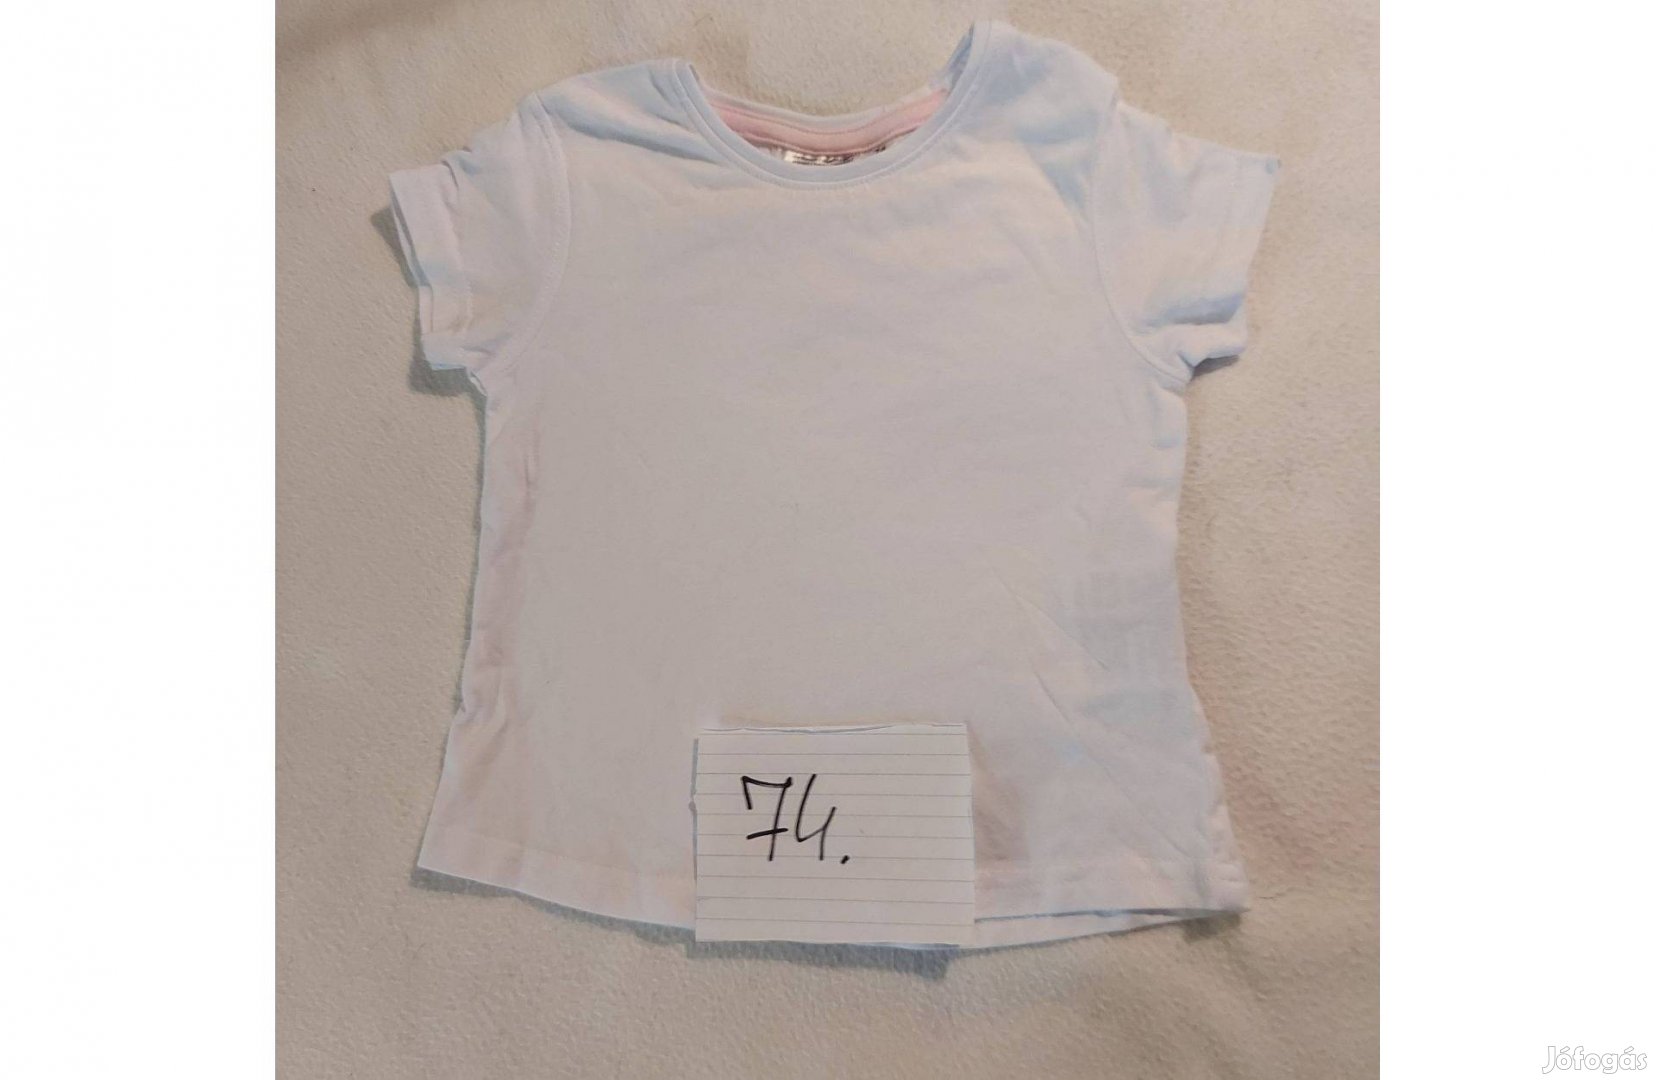 74-es kislány trikó fehér színű, oldalt patentos